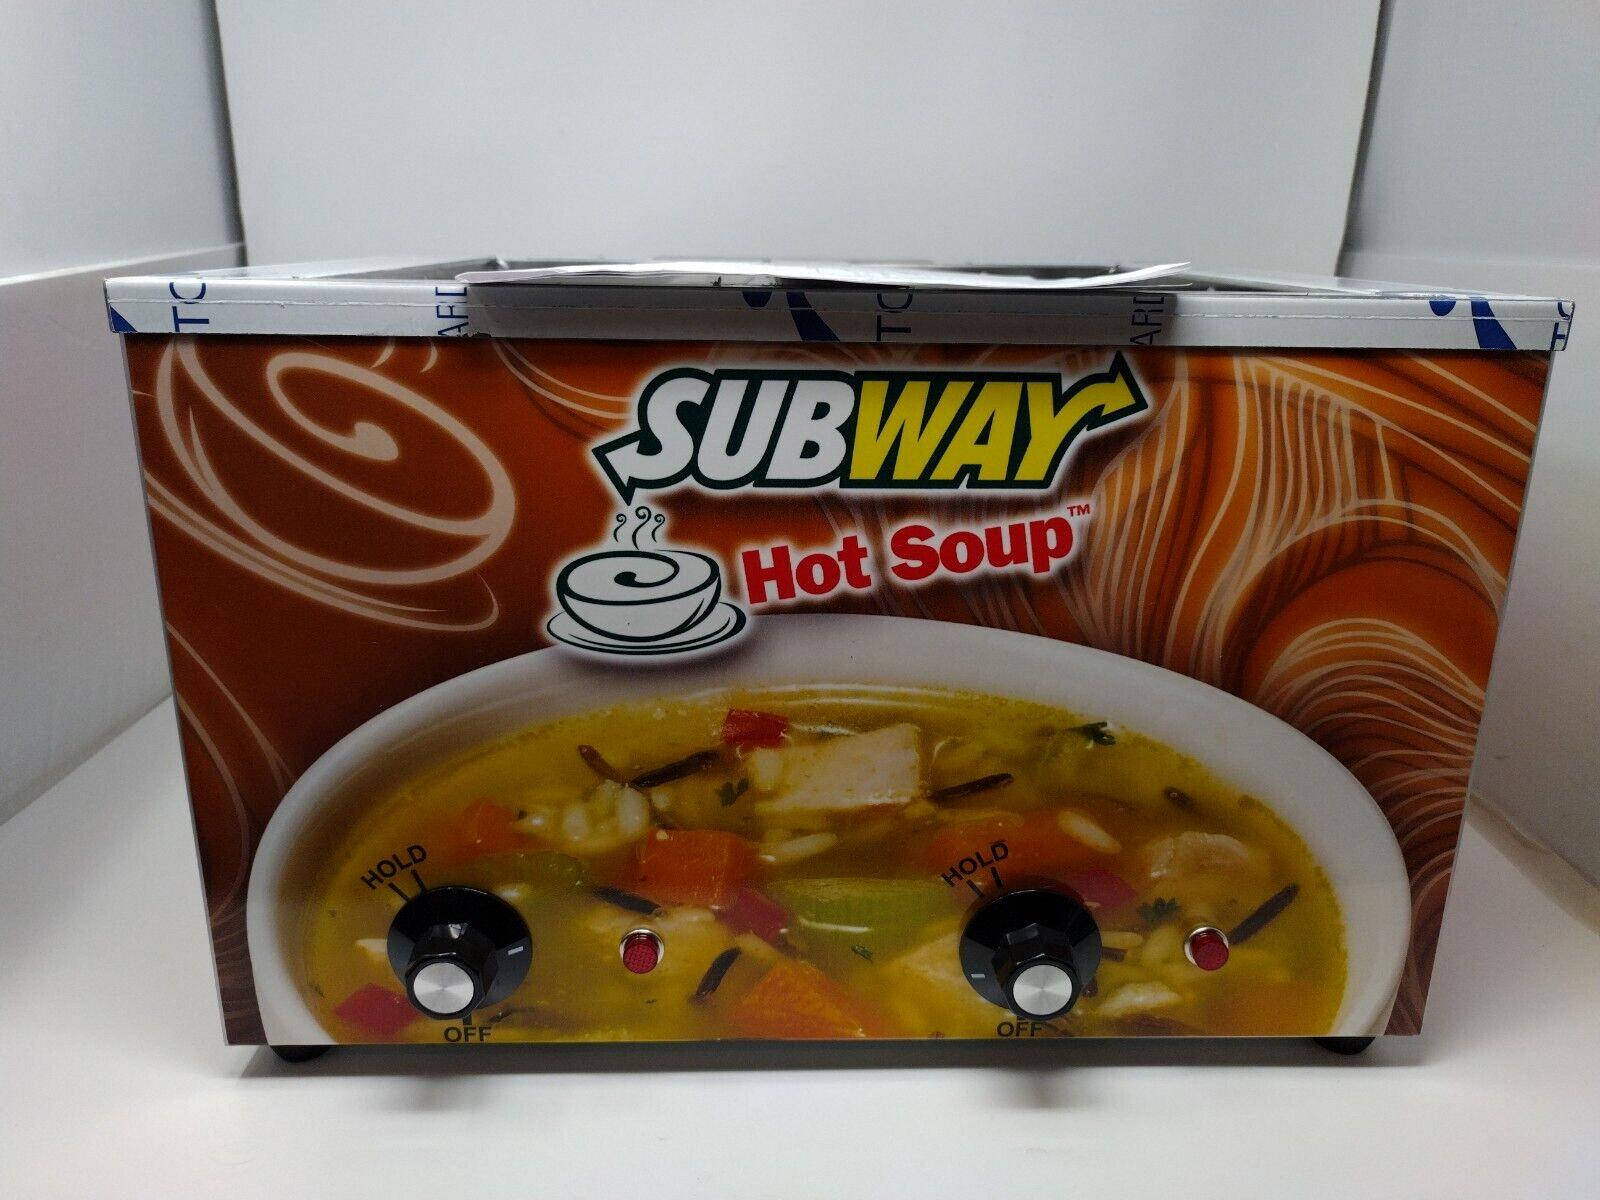 It's Soup Season at Subway!